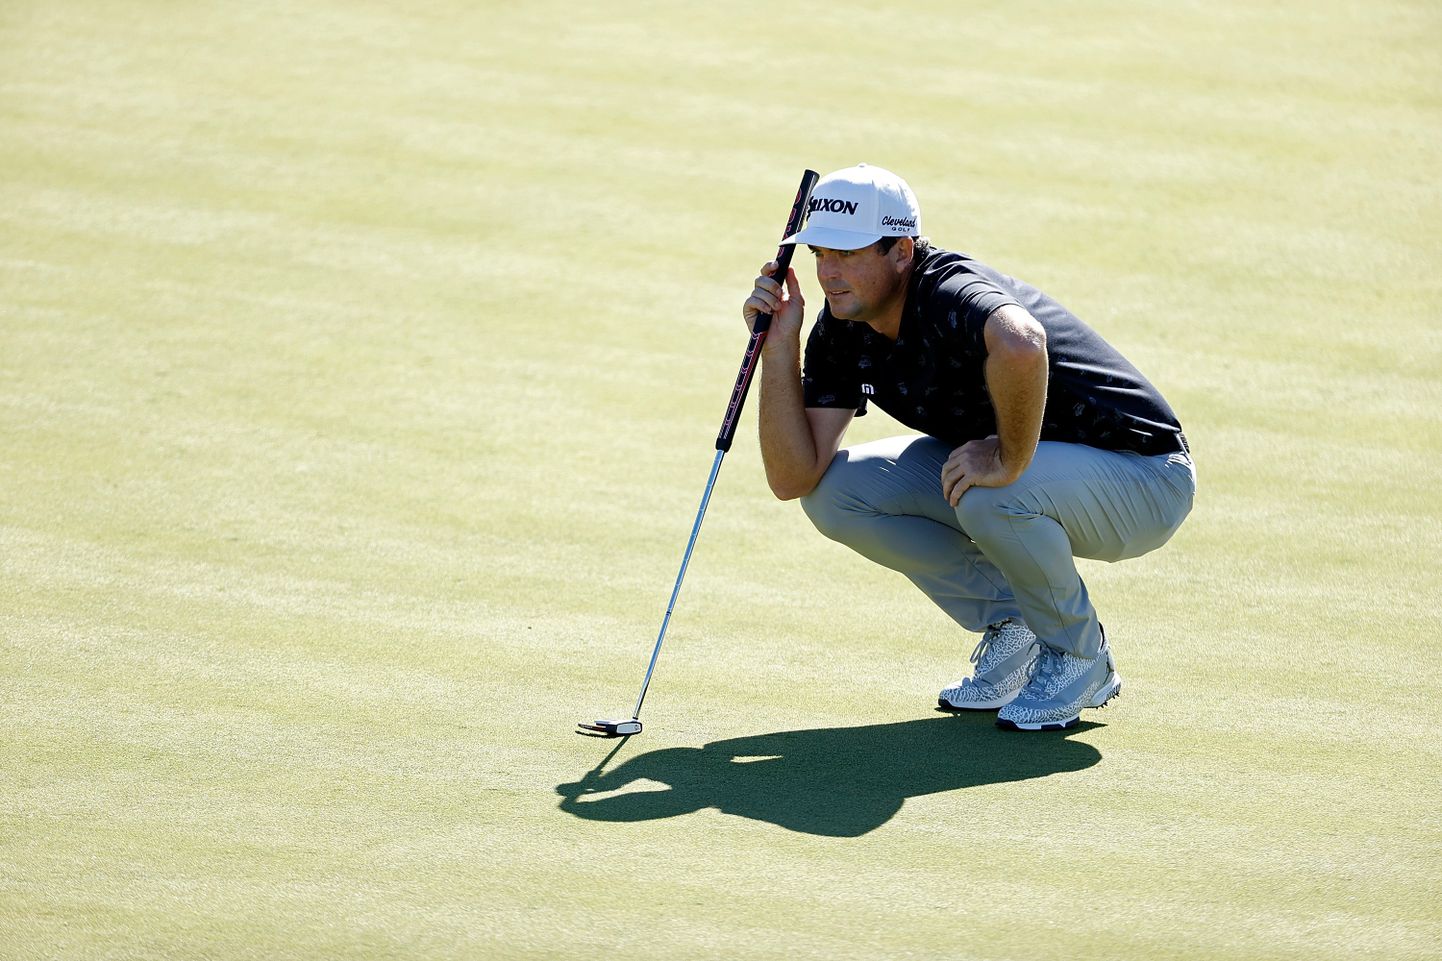 USA golfitäht Keegan Bradley pidi Genesis Invitational turniiril tunnistama loodusjõudude ülemvõimu.